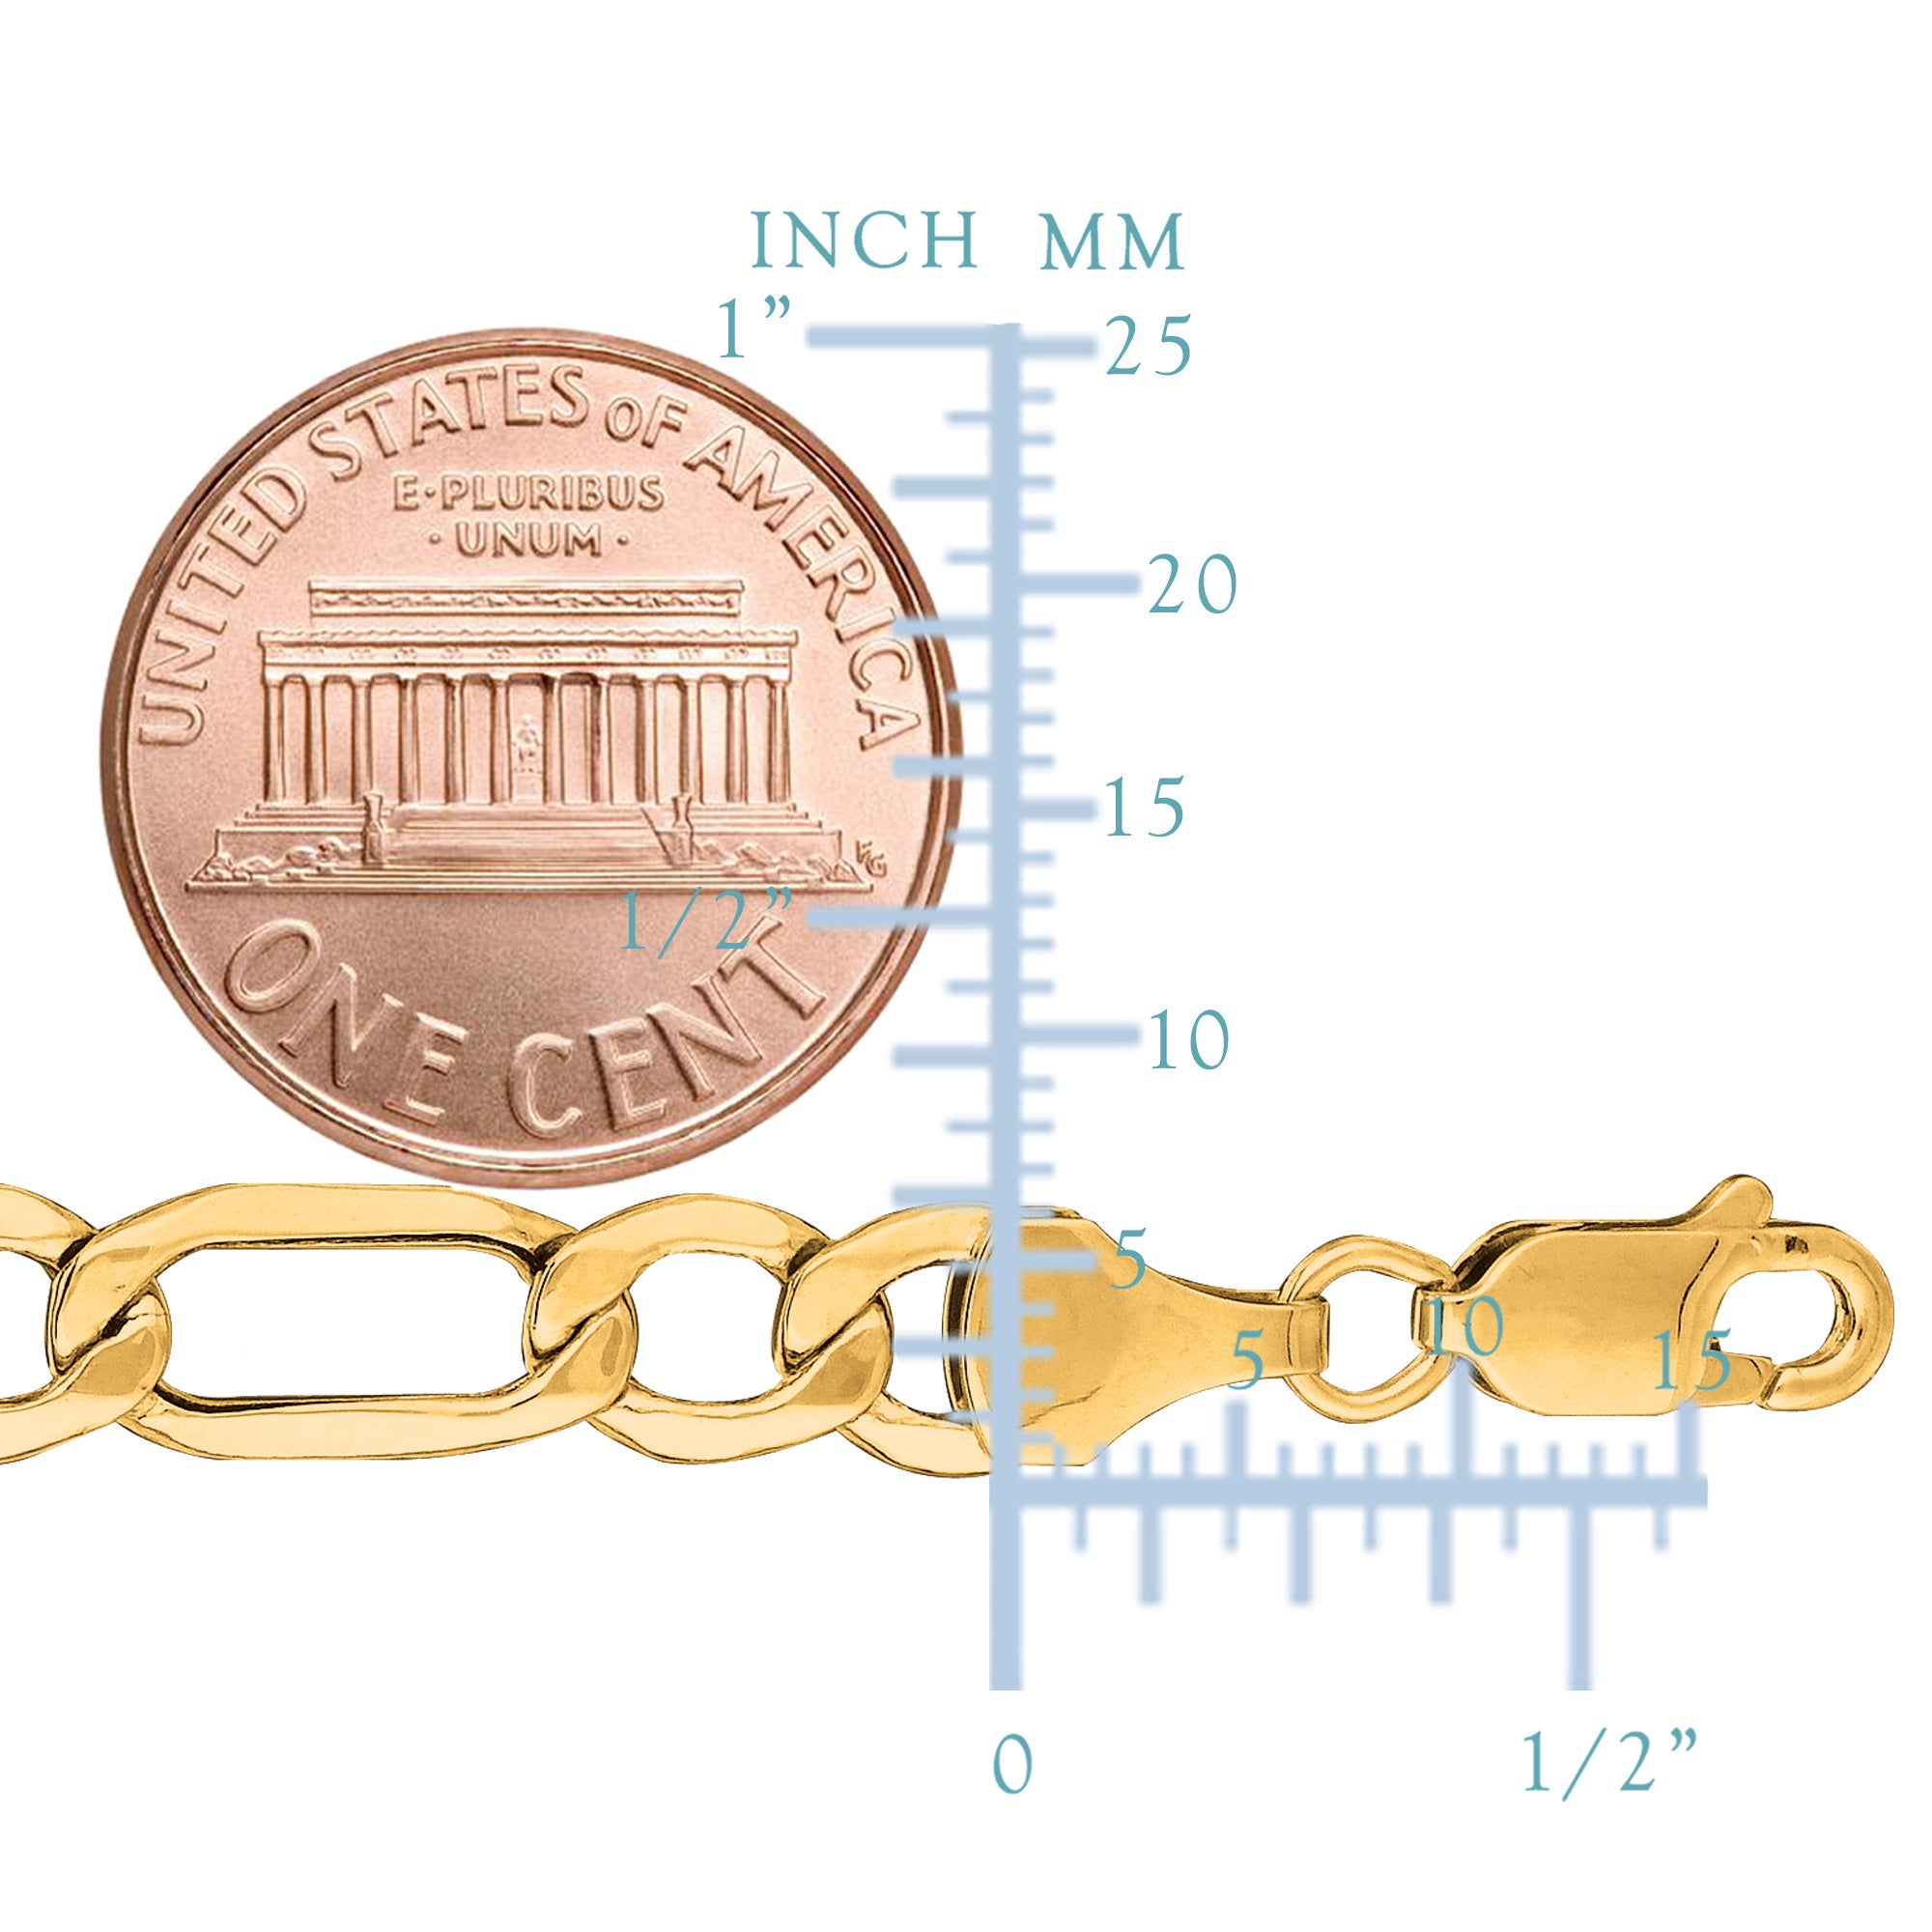 10 k gult guld ihåligt Figaro Chain Halsband, 6,5 mm fina designersmycken för män och kvinnor